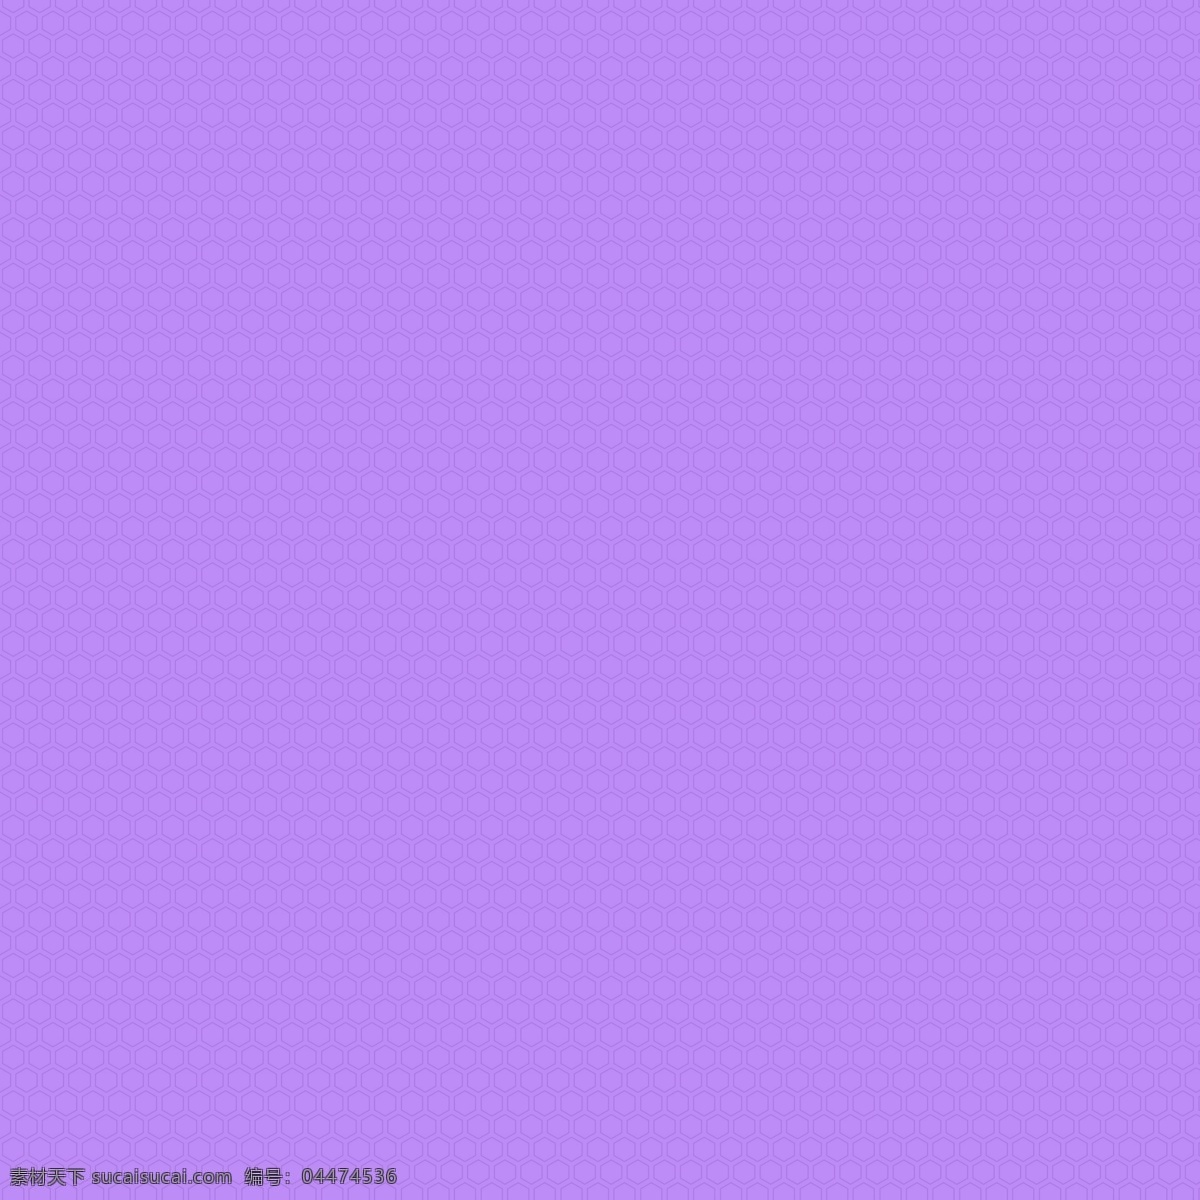 六边形底纹 紫色背景 紫色底纹 底纹 纹理 淡紫色背景 六边形纹理